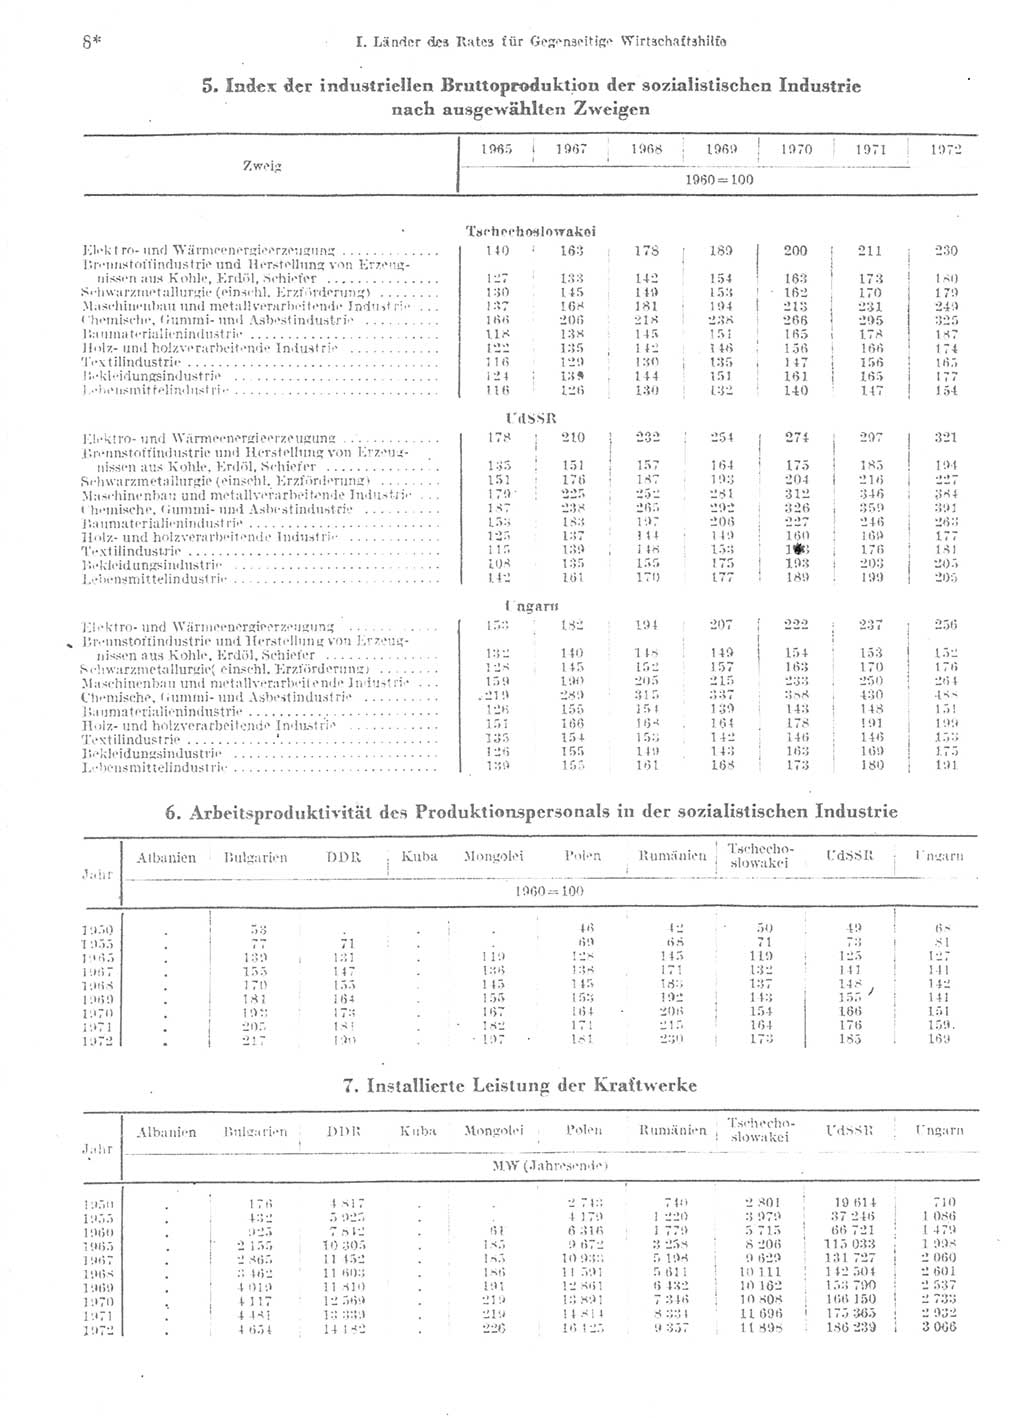 Statistisches Jahrbuch der Deutschen Demokratischen Republik (DDR) 1974, Seite 8 (Stat. Jb. DDR 1974, S. 8)